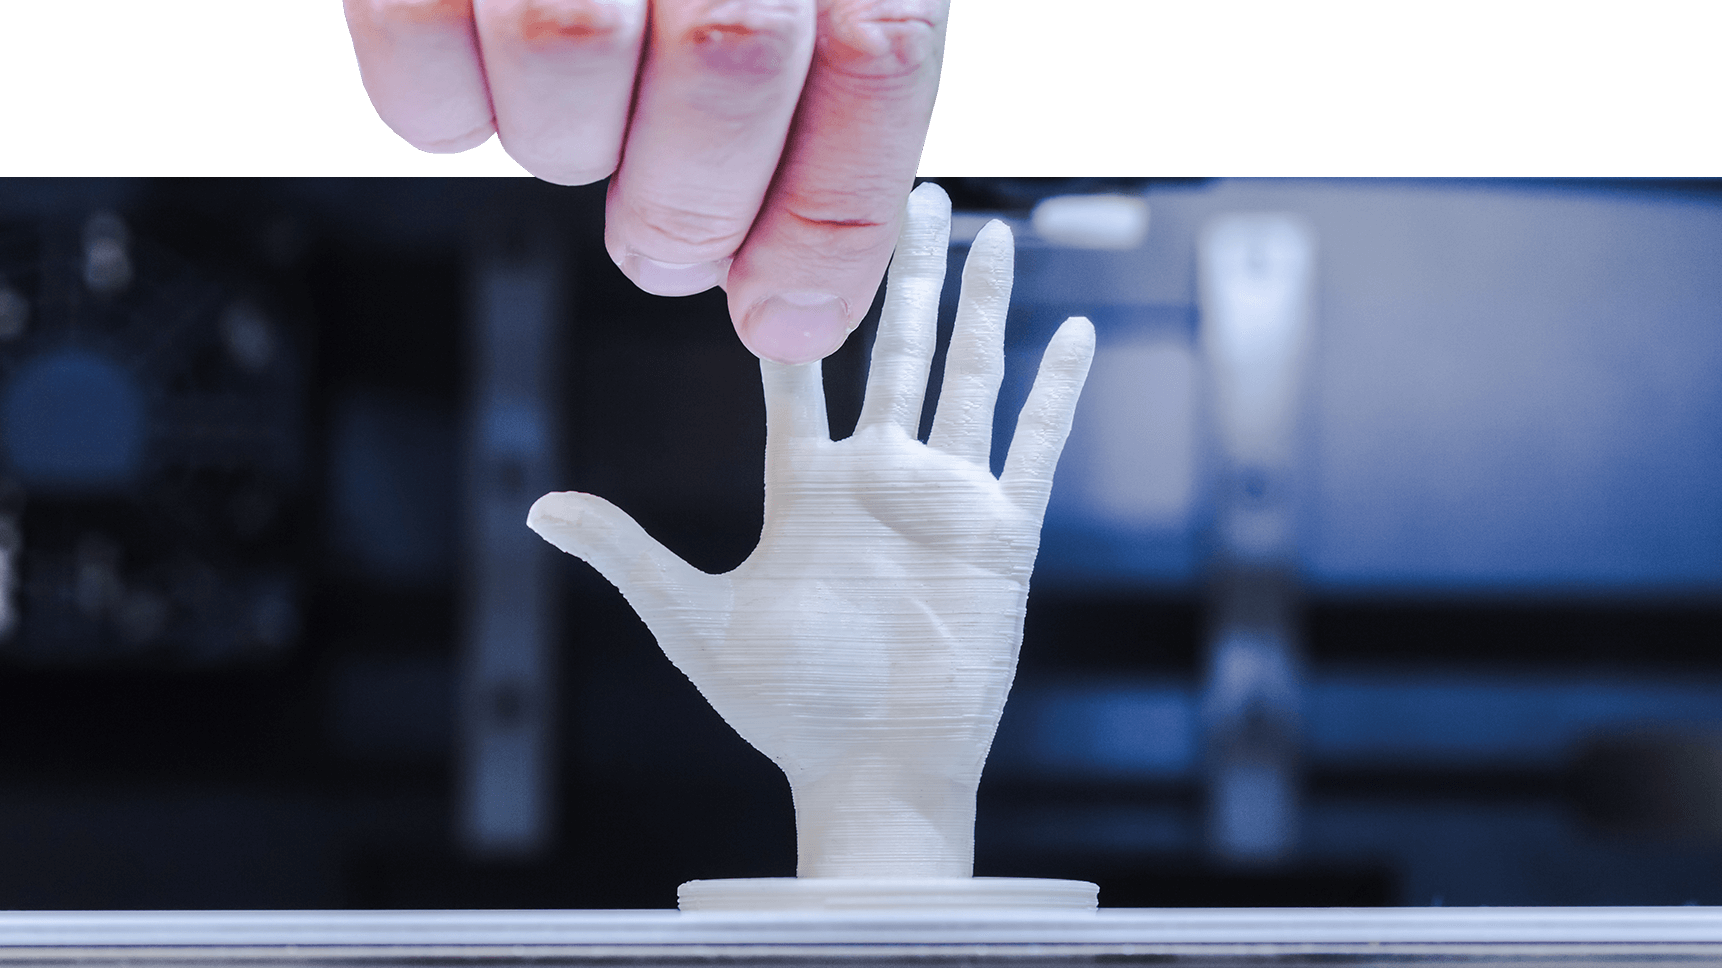 3D printer creates a human hand.